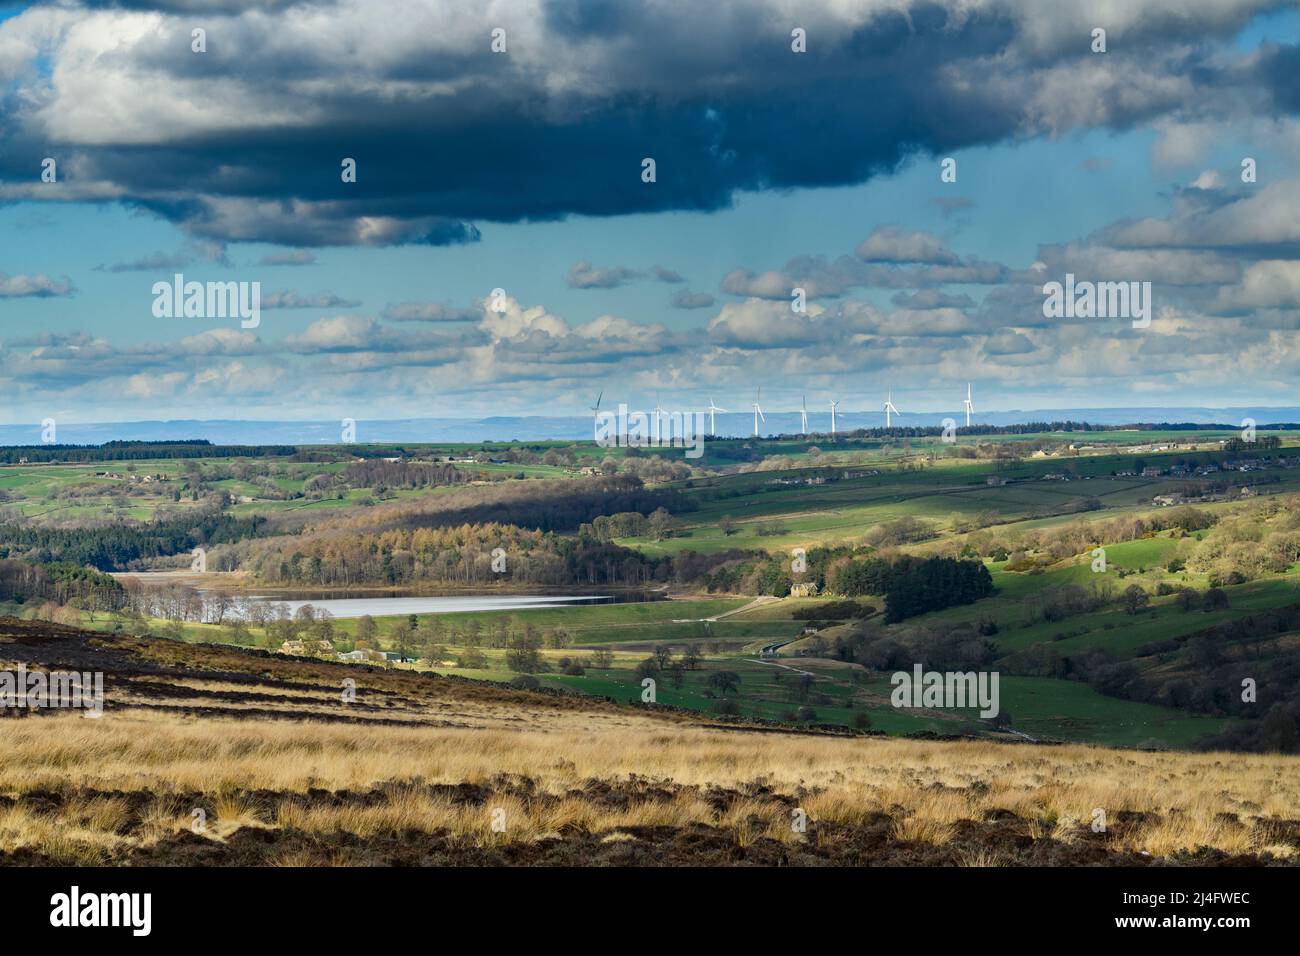 Pittoresque campagne de Washburn Valley (réservoir Swinsty, pâturages de terres agricoles, grandes tours géantes d'éoliennes, nuageux) - North Yorkshire, Angleterre Royaume-Uni. Banque D'Images